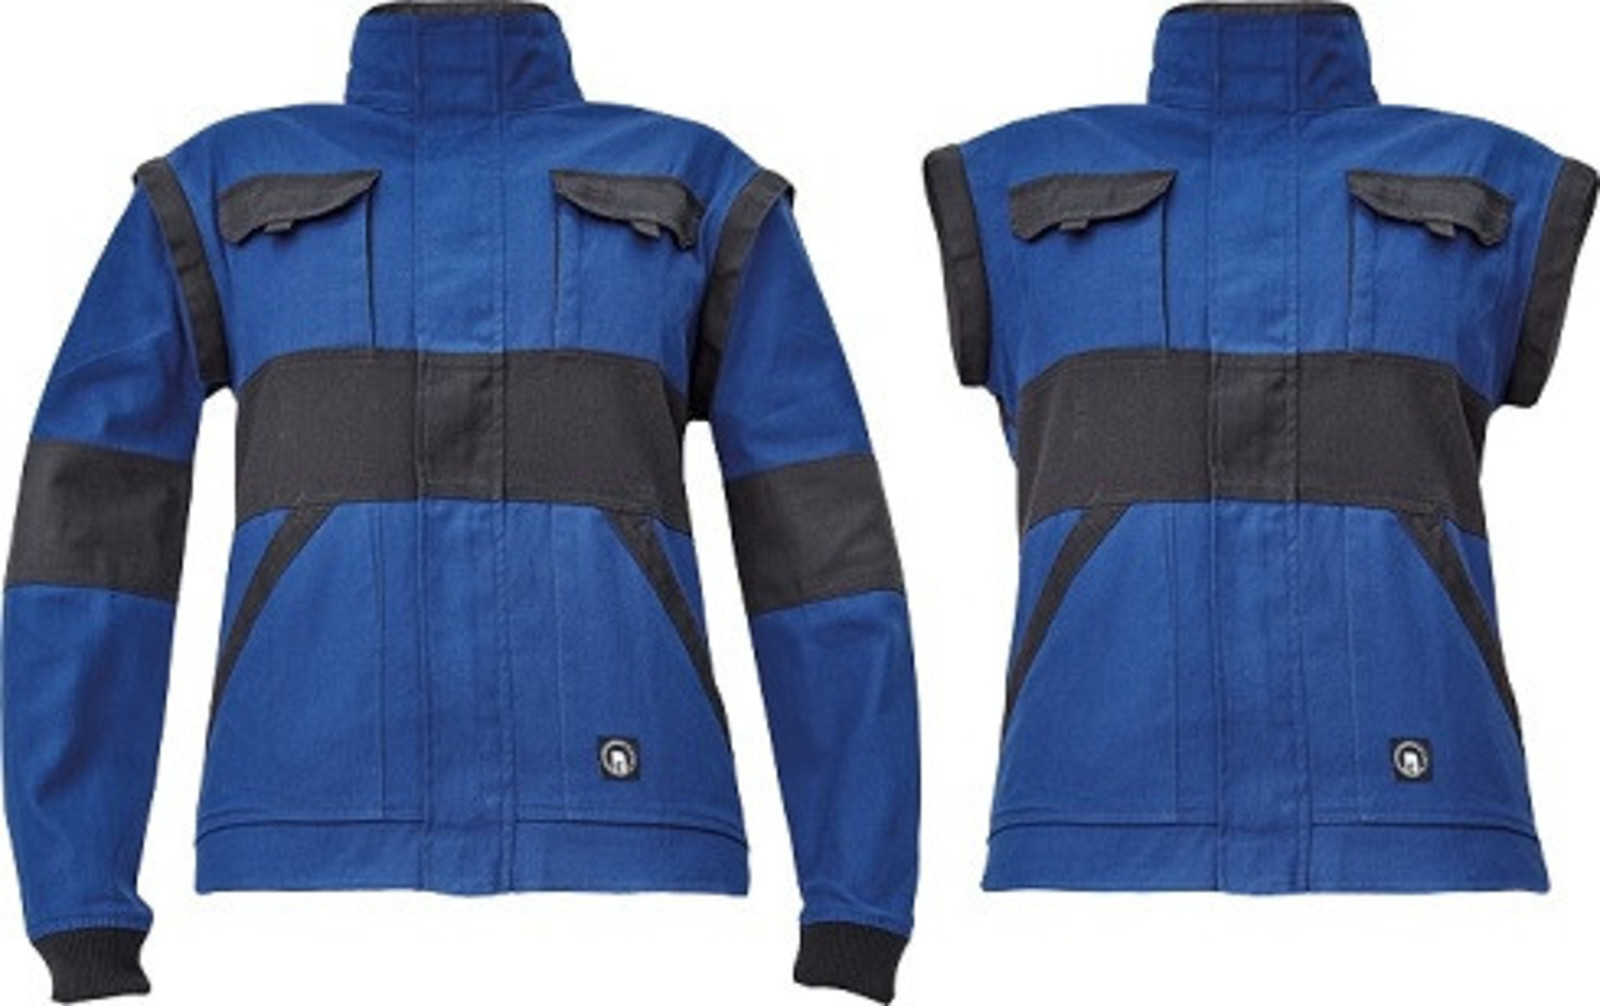 Dámska bavlnená montérková bunda Cerva Max Neo Lady 2v1 - veľkosť: 52, farba: modrá/čierna